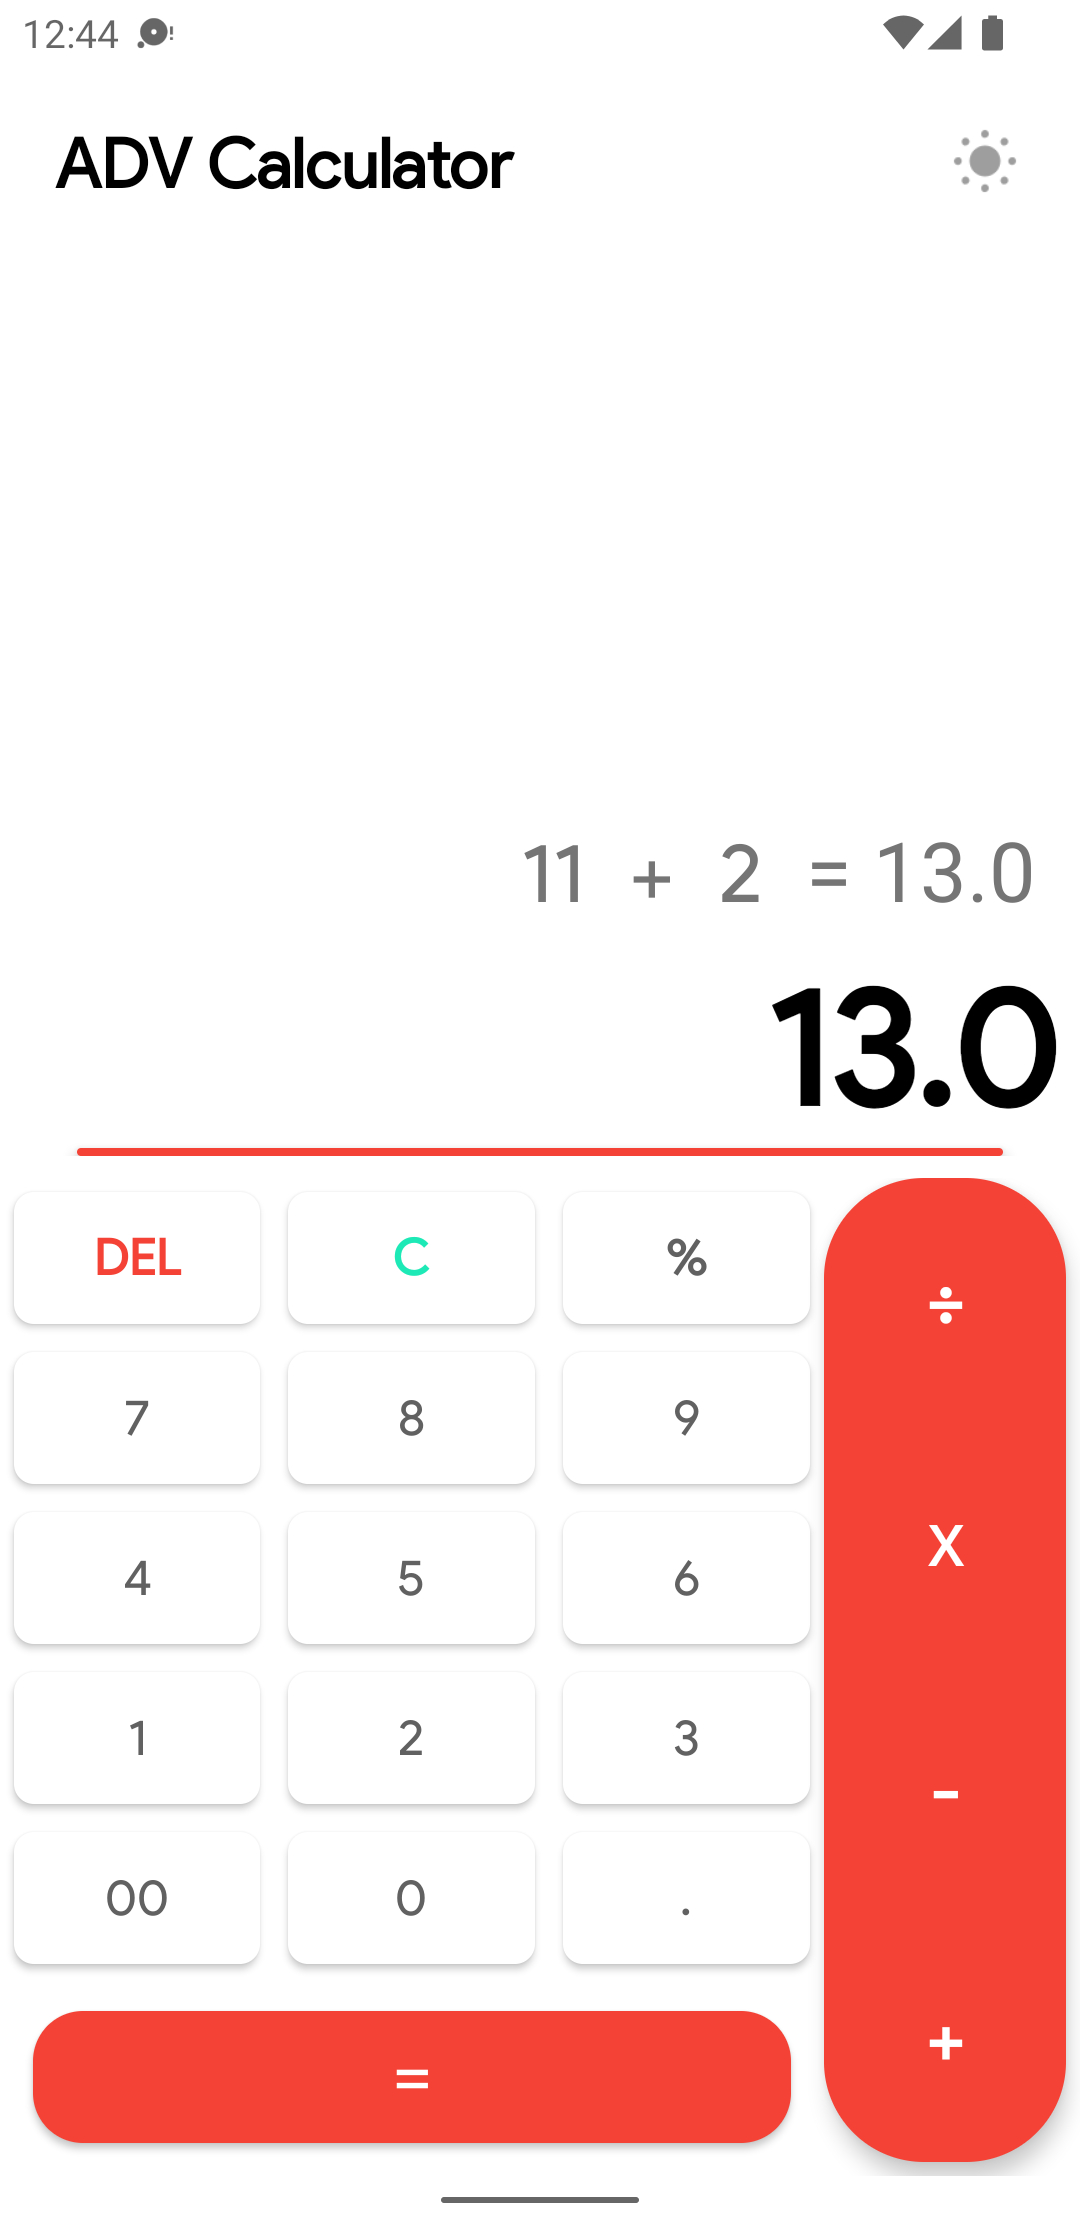 ADV Calculator